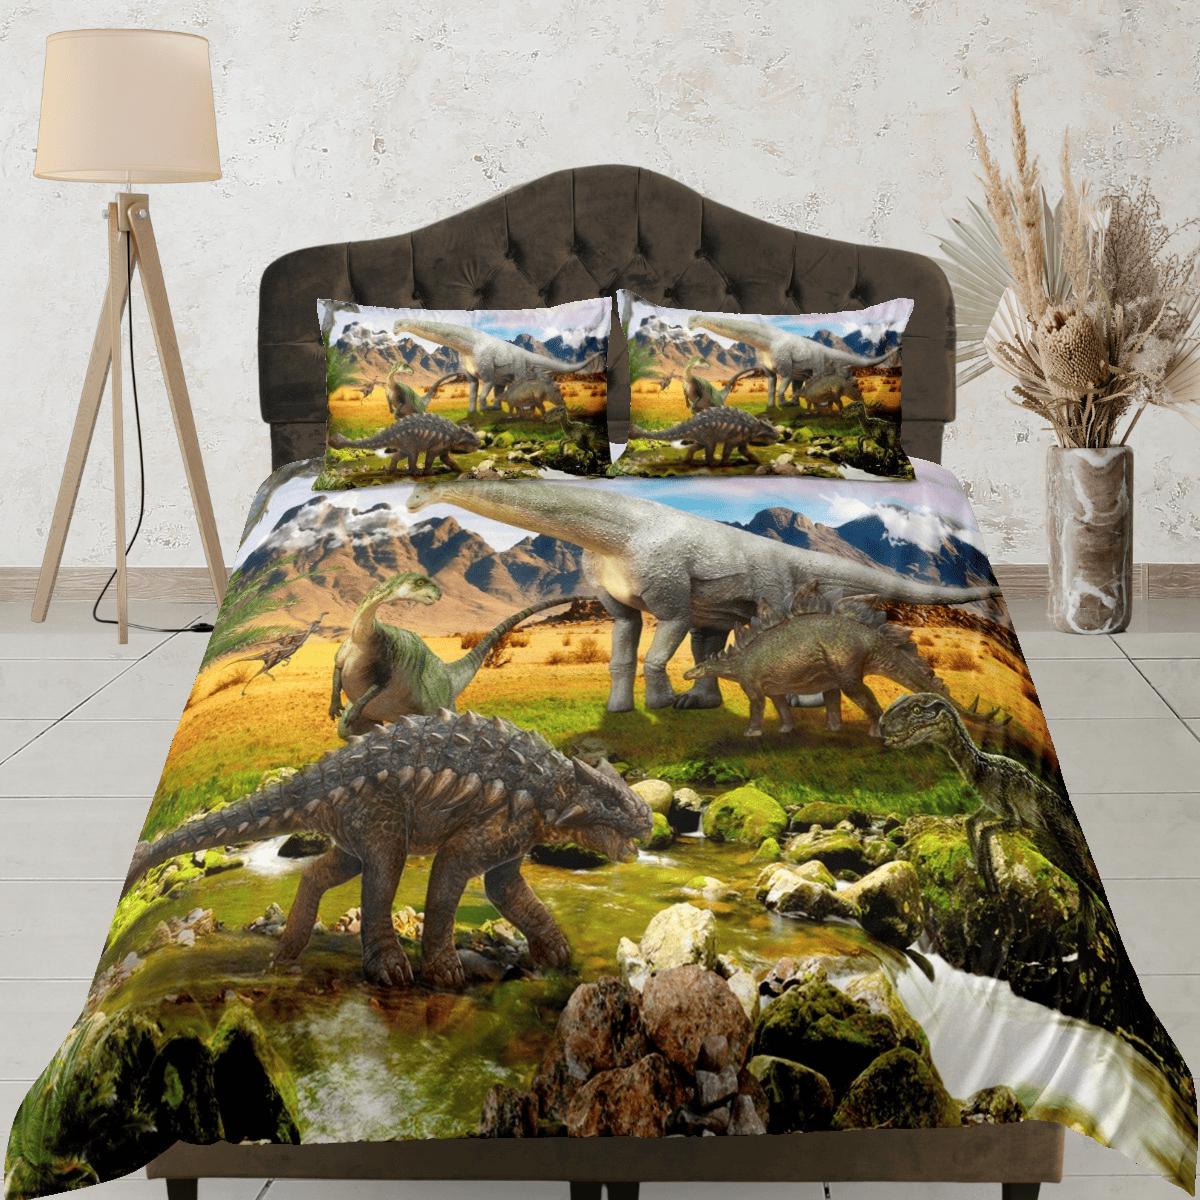 daintyduvet Dinosaur bedding, adult duvet cover, dorm bedding, teen boys bedding set full, animal prints duvet cover set, dinosaur gift, outdoor scenery